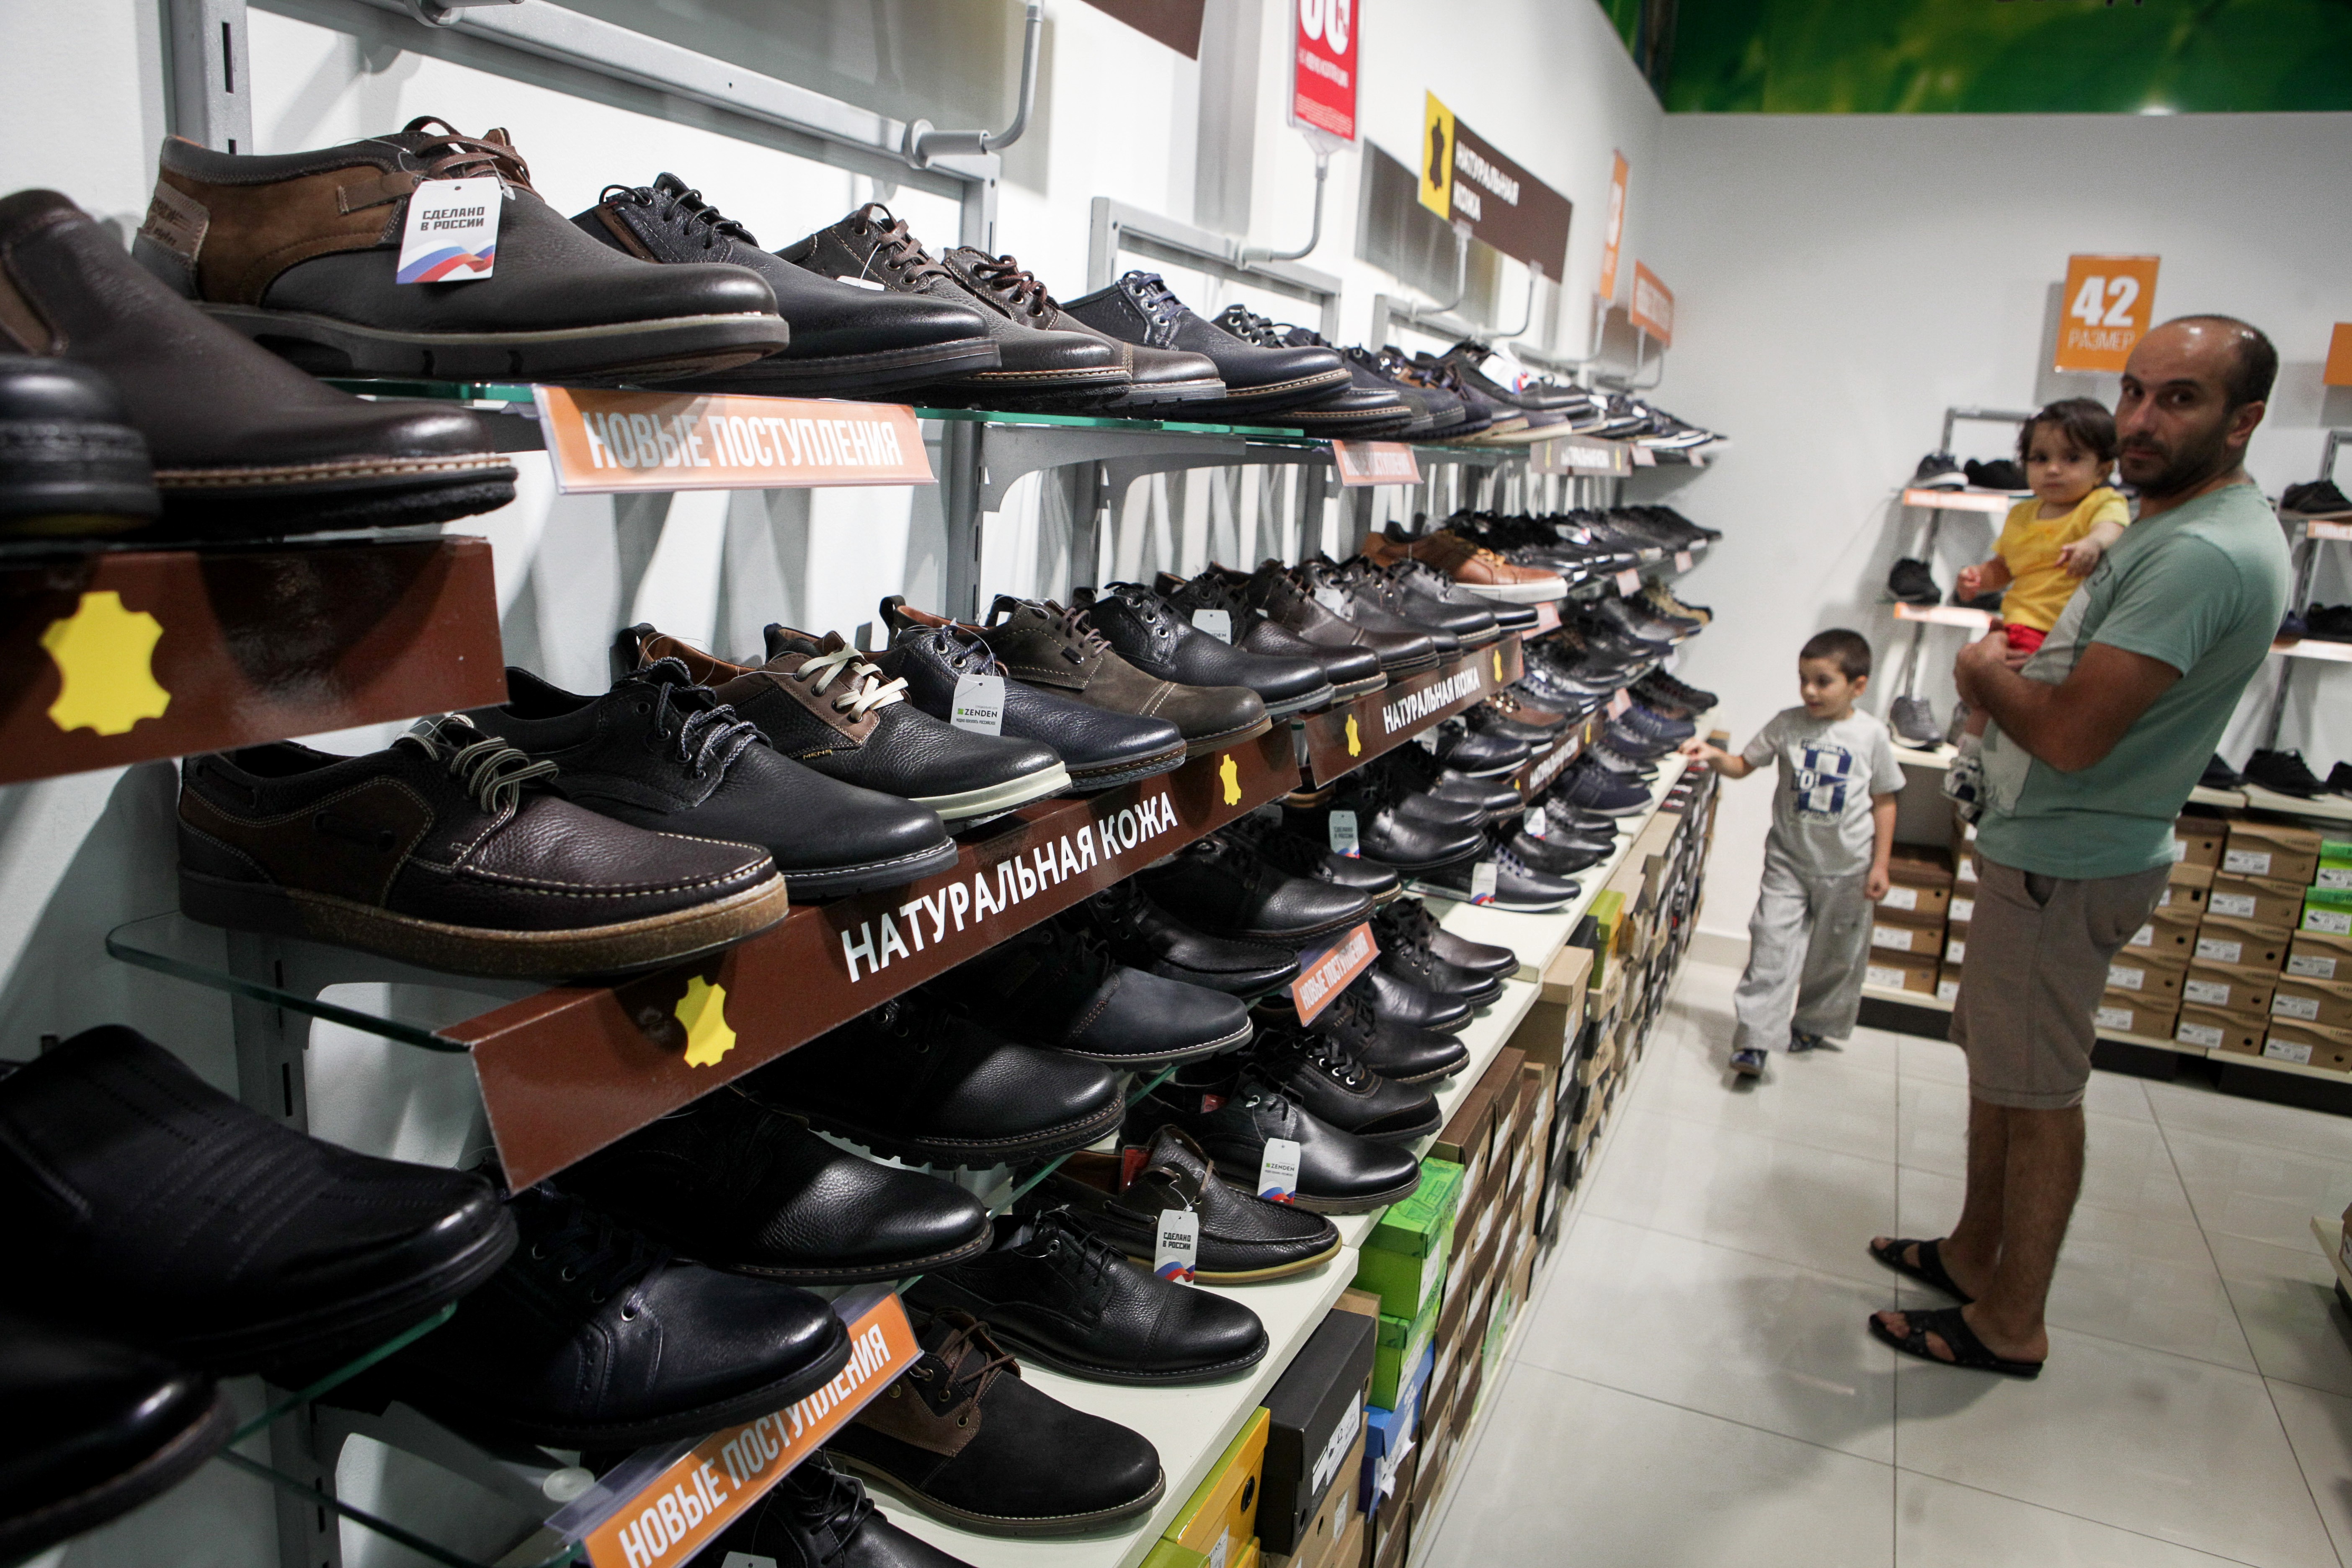 Хочу купить обувь. Магазин мужской обуви. Рынок обуви. Рынок мужской обуви. Обувные товары.